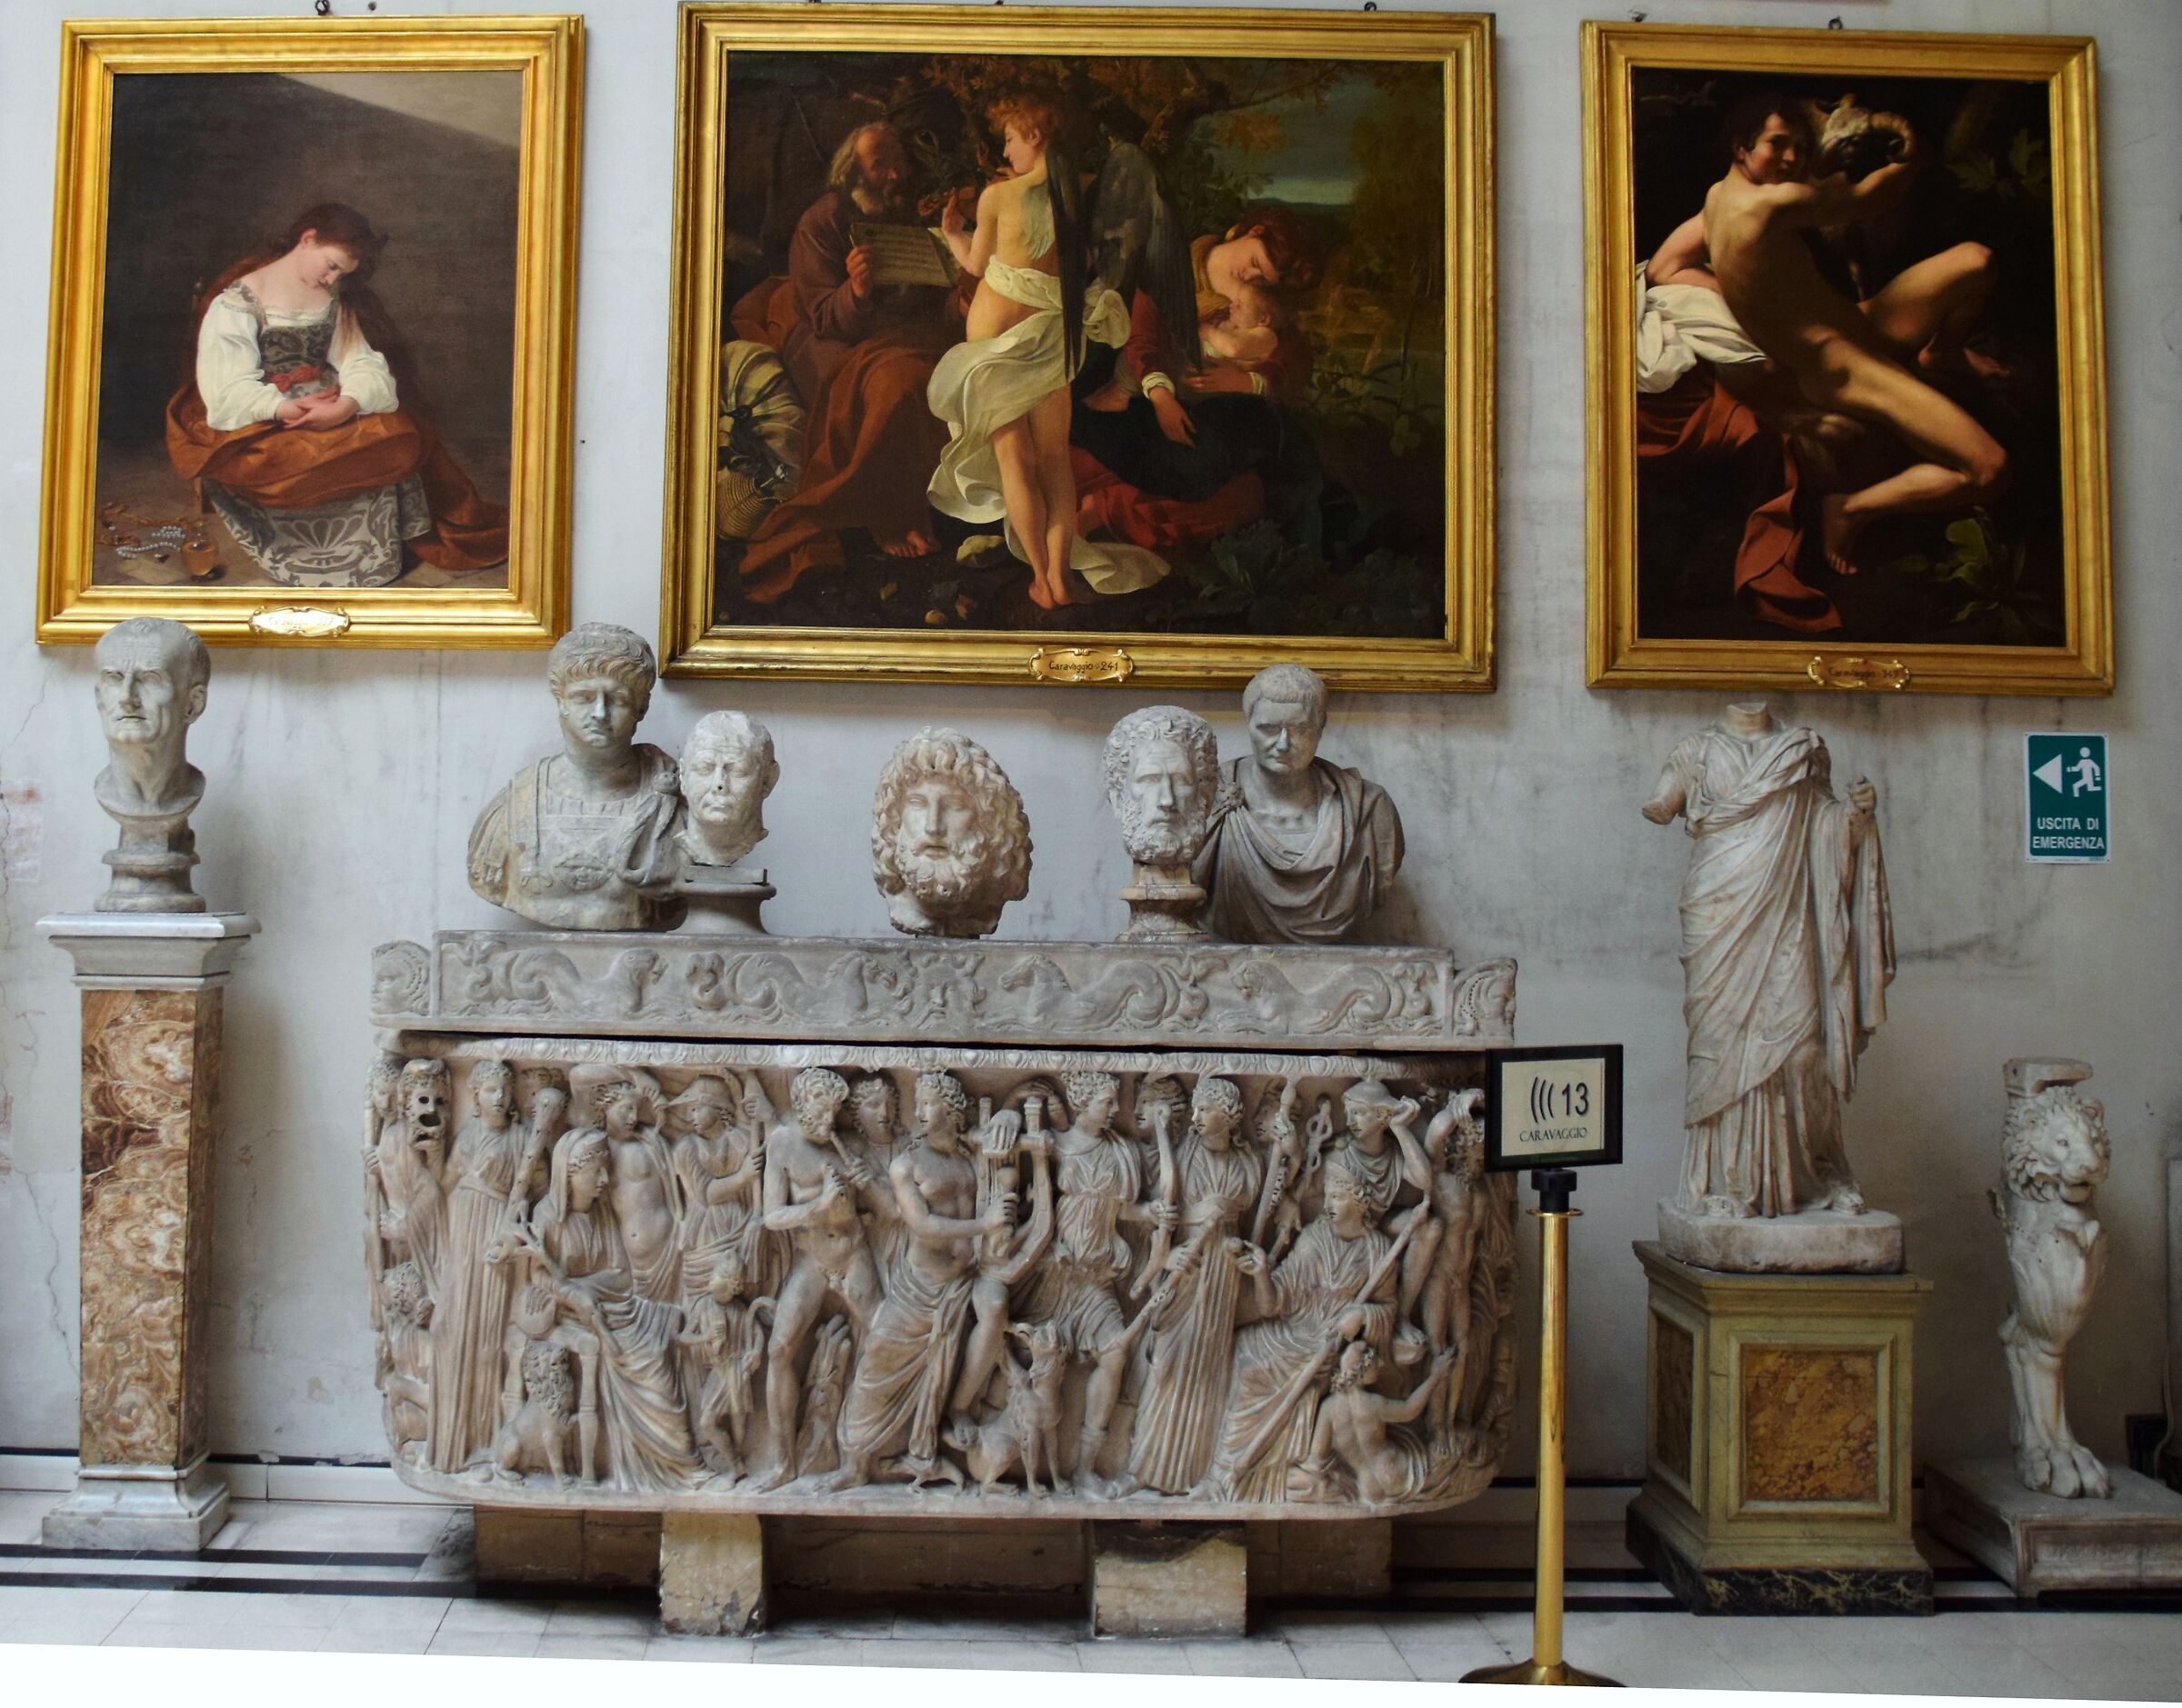 Doria Pamphilj Gallery "Capolavors of Caravaggio"...